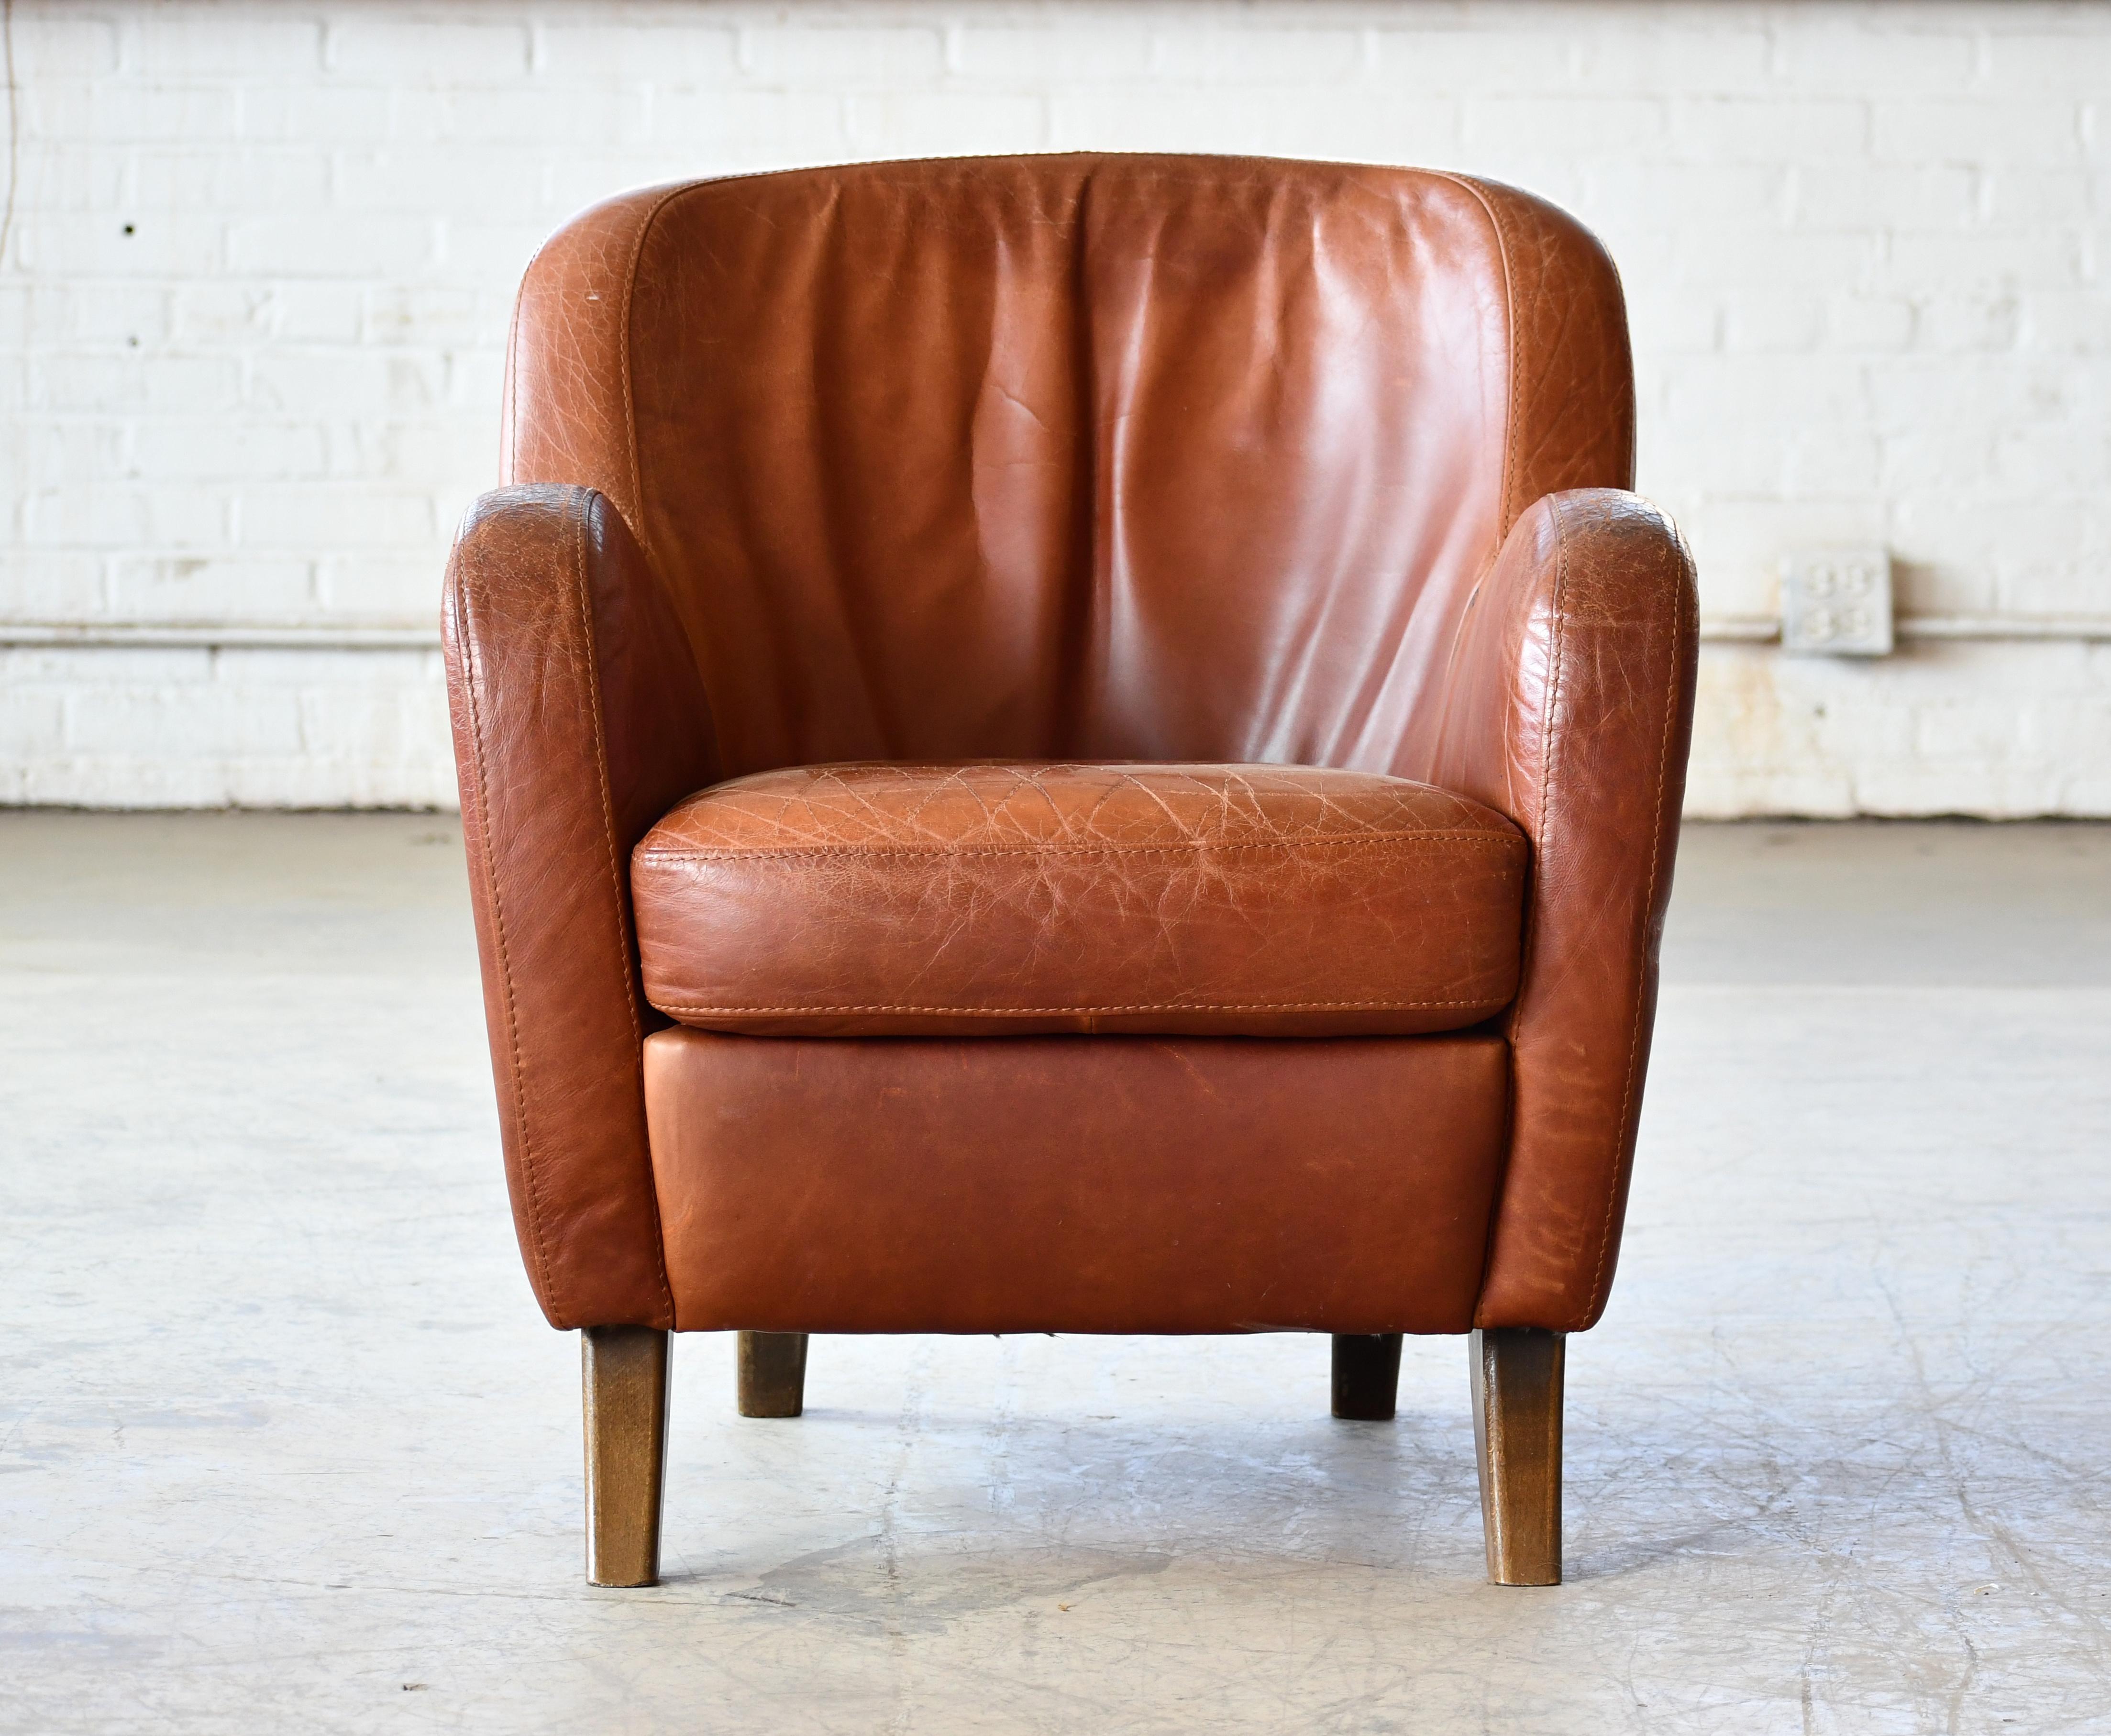 Wir haben diesen kühnen und geschwungenen Sessel in Dänemark gefunden, sind uns aber nicht sicher, wer der Hersteller und Designer ist, da der Stuhl nicht gekennzeichnet ist.  Der Stuhl ist leicht nach hinten geneigt und hat einen ähnlichen Stil und